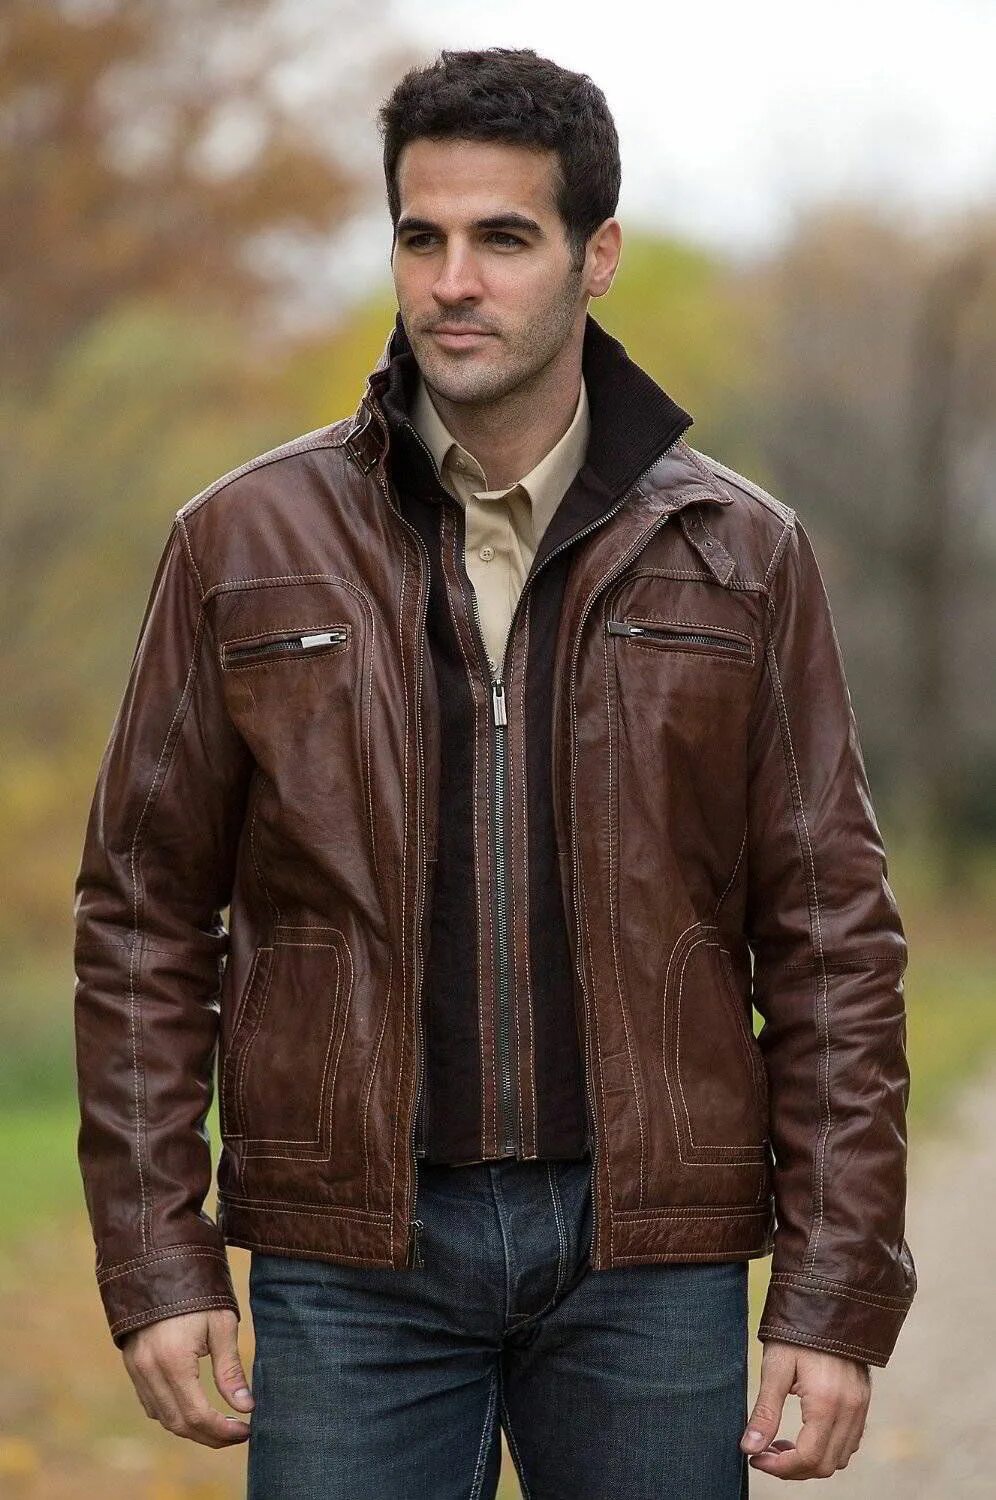 Кожаная куртка Castro men. Мужчина в куртке. Мужчина в кожаной куртке. Коричневая куртка мужская. Фото мужчины в куртке